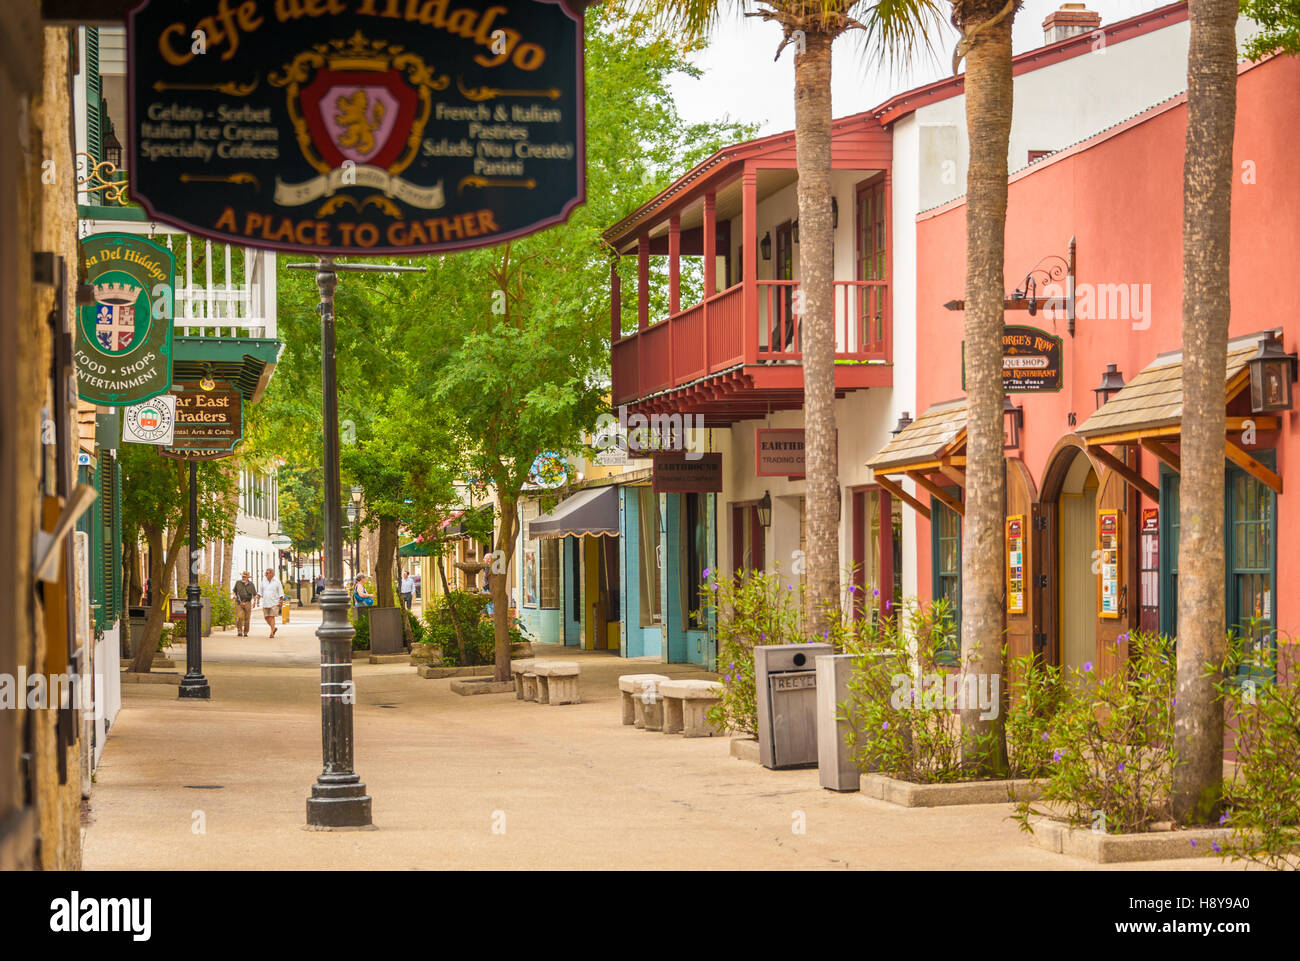 Les gens se promener parmi les commerces, restaurants, tavernes et de la rue George Street, dans la ville historique de Saint Augustine, Floride, USA. Banque D'Images